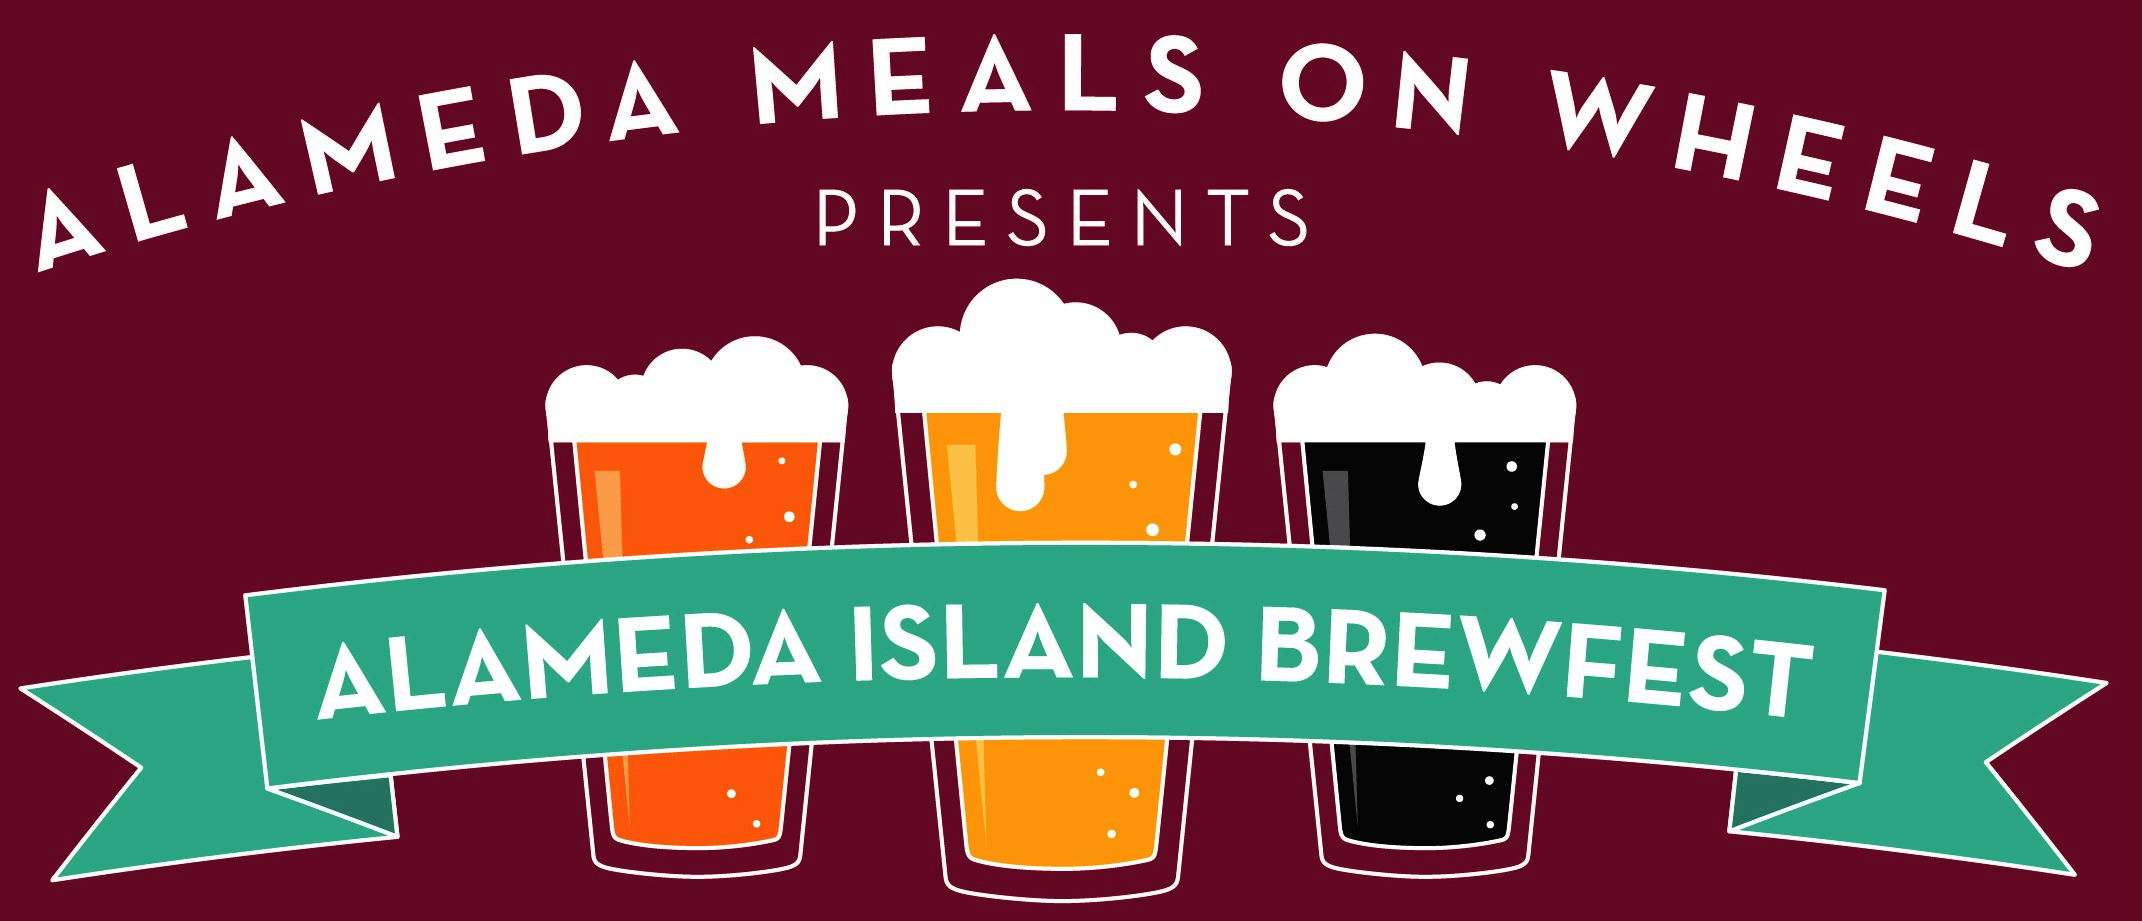 Alameda Island Brewfest banner image